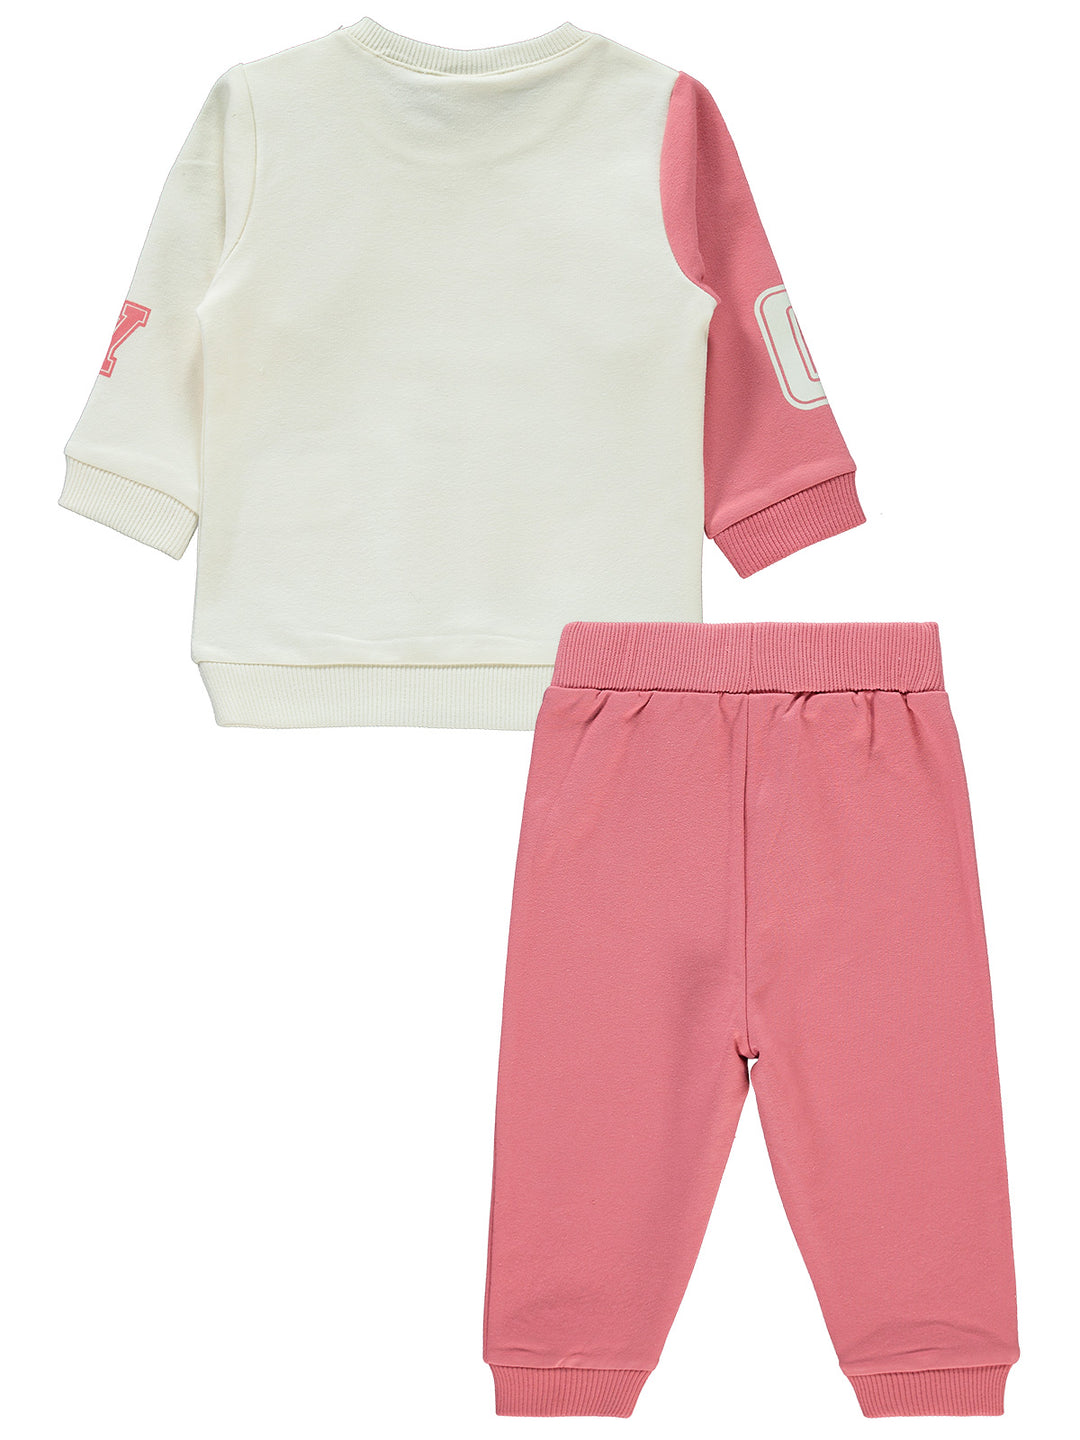 Civil Baby Pajama Suit Cotton L/S 2Pcs #E406 (W-22)